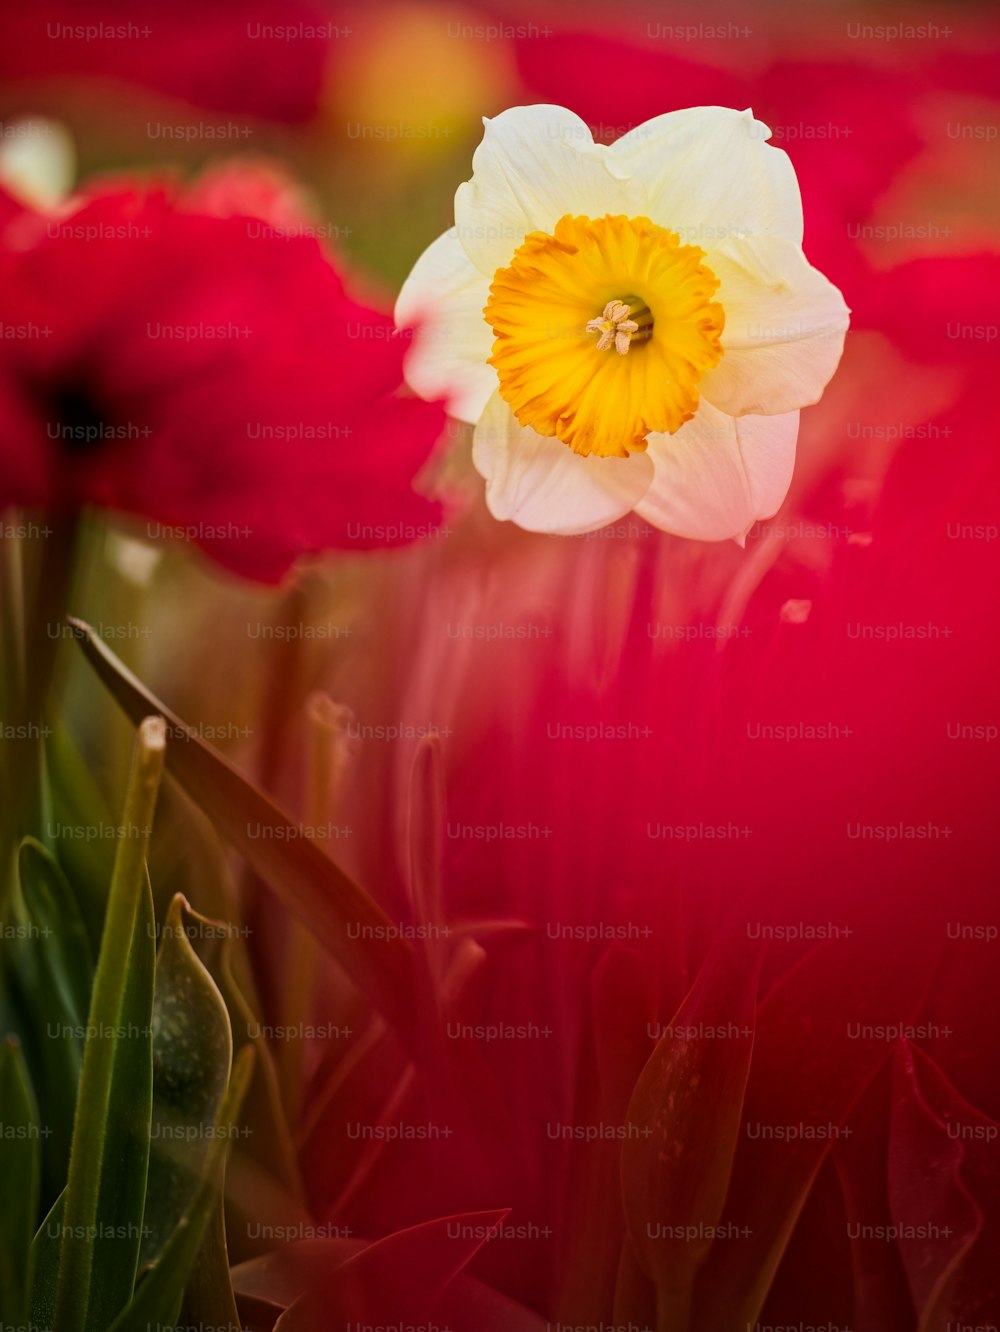 Una sola flor blanca y amarilla en un campo de flores rojas